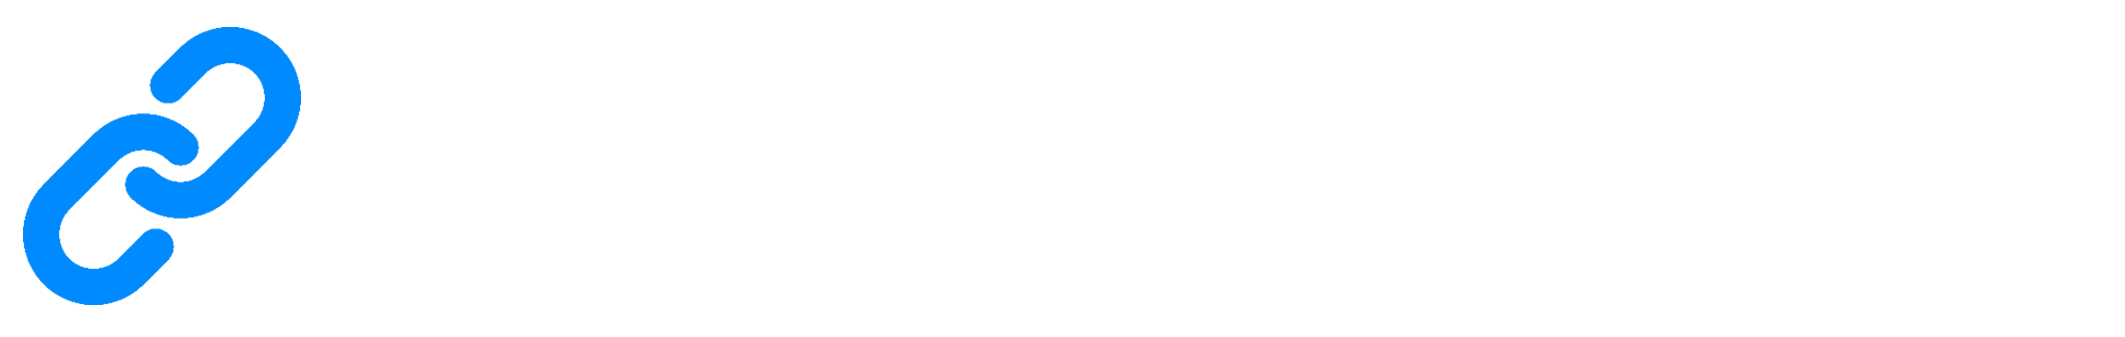 NgeLink.me - Short URL, Link Management, One Link For Everything